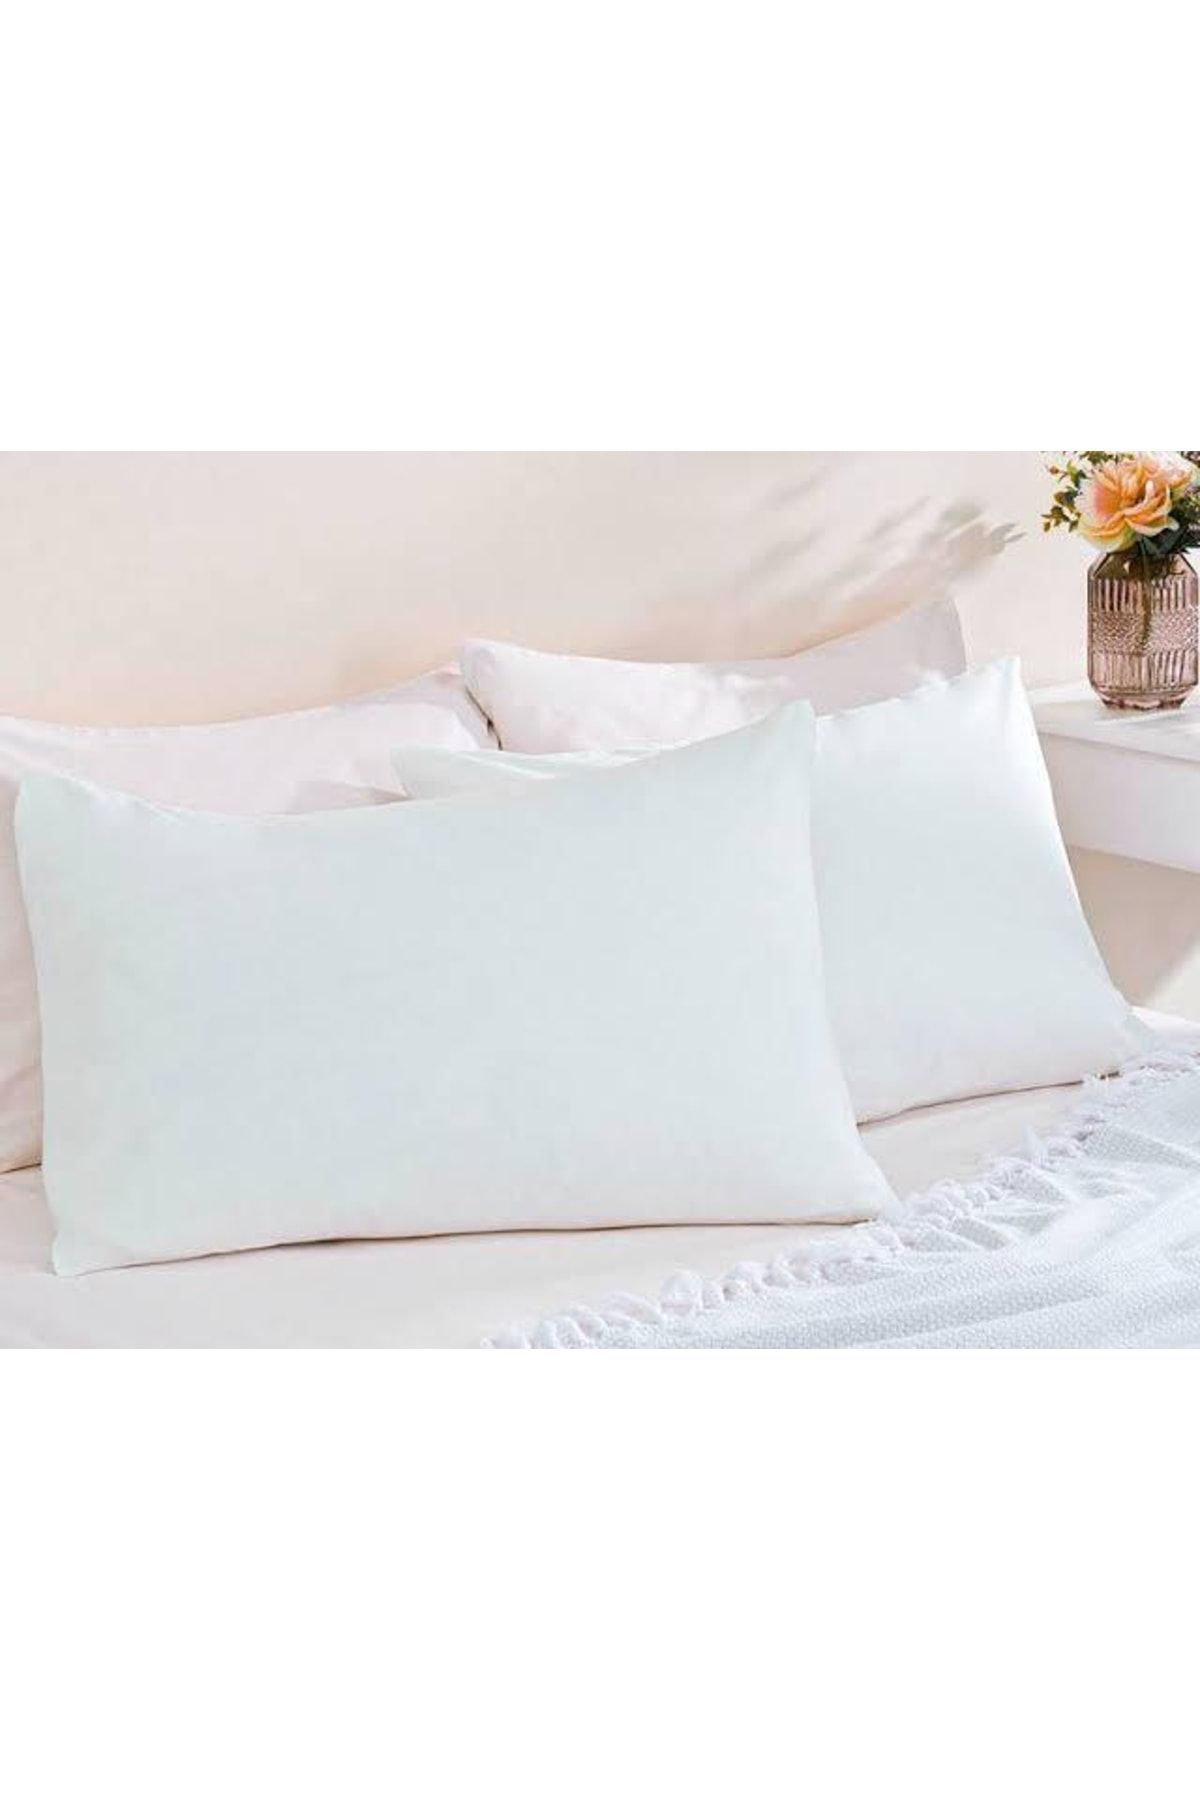 AYHOME Yastık Kılfı Ikili Set Yüzde Yüz Pamuklu Beyaz Renk 50 X 70 Cm Ebatında Çeyizlik